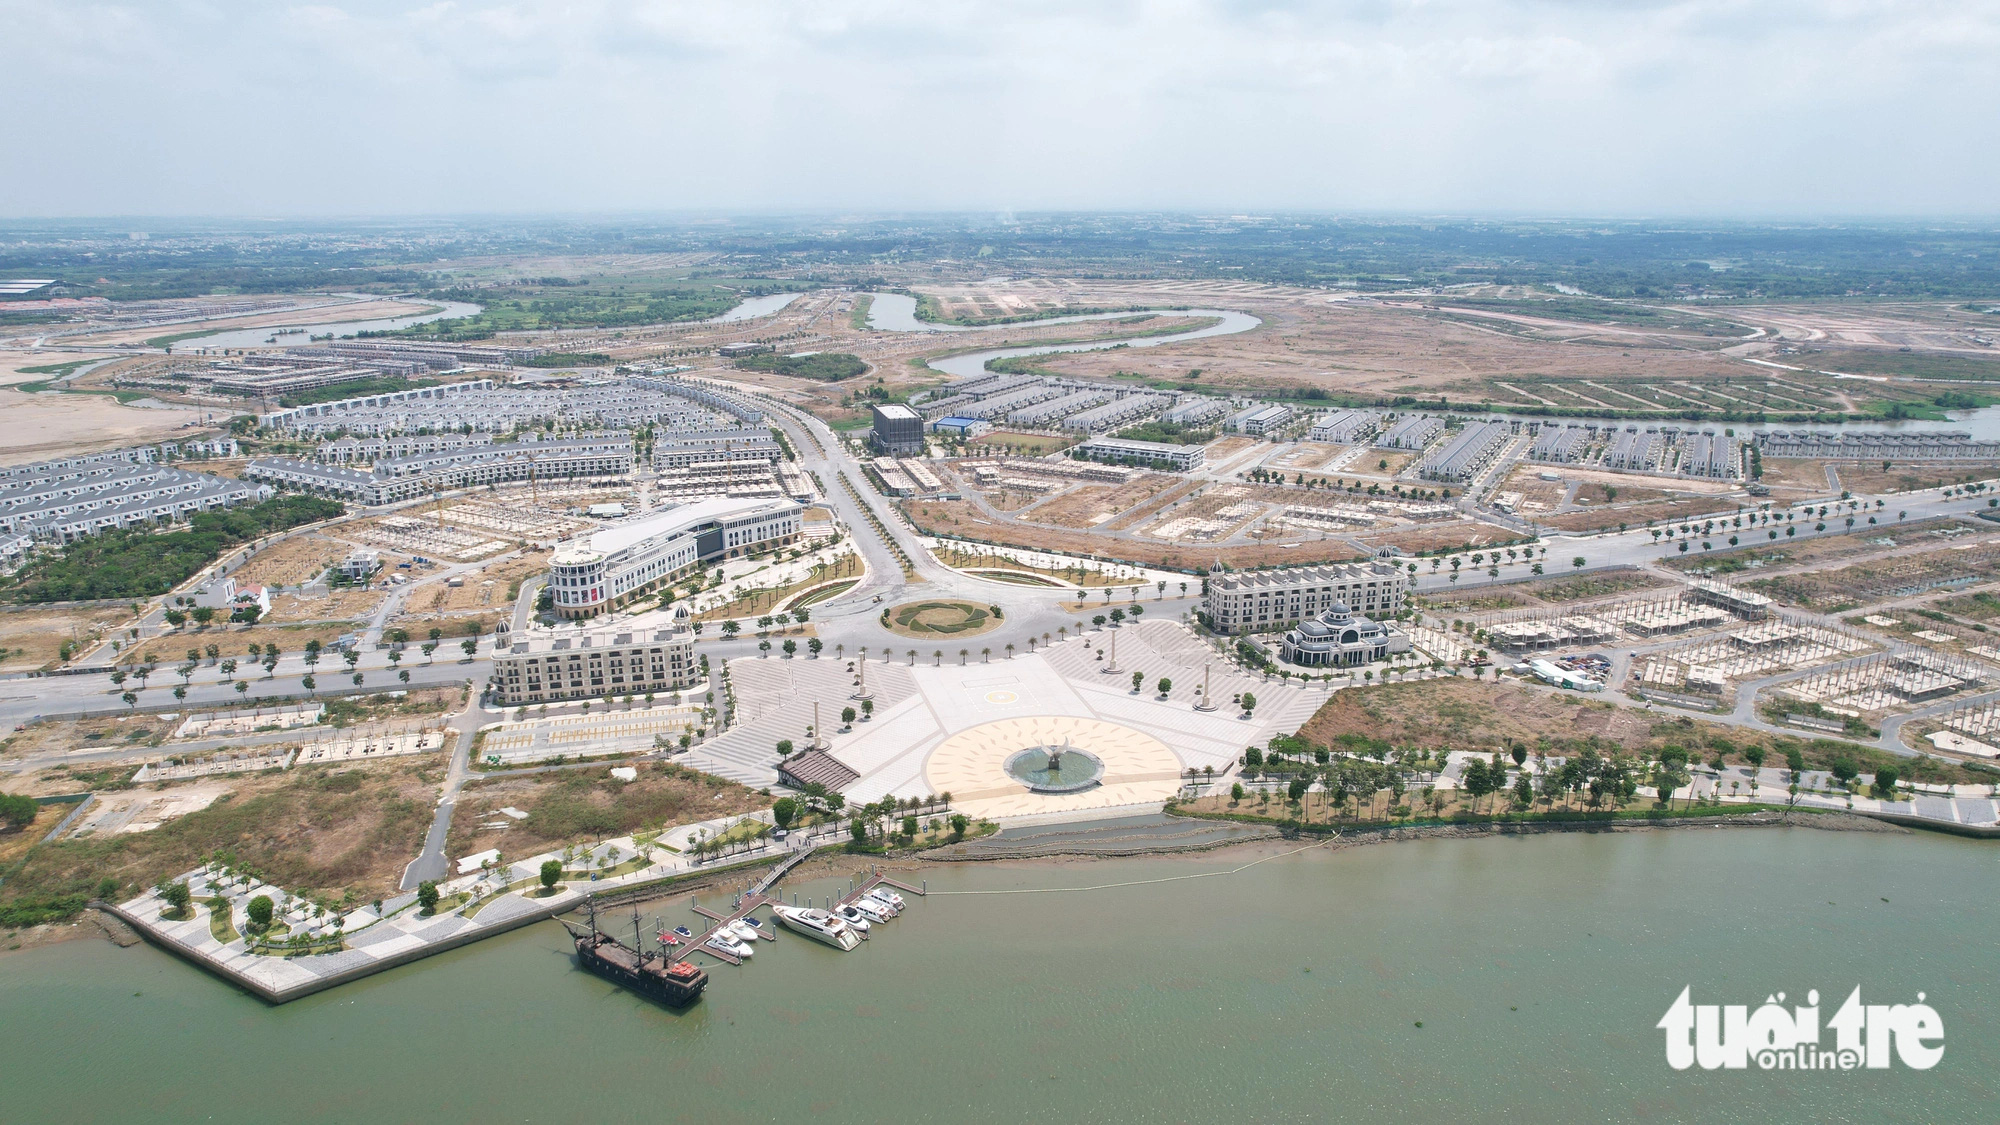 Bên kia sông Đồng Nai, dự án Aqua City đã được xây dựng các năm qua, hiện gặp vướng về phê duyệt điều chỉnh quy hoạch - Ảnh: NGỌC HIỂN